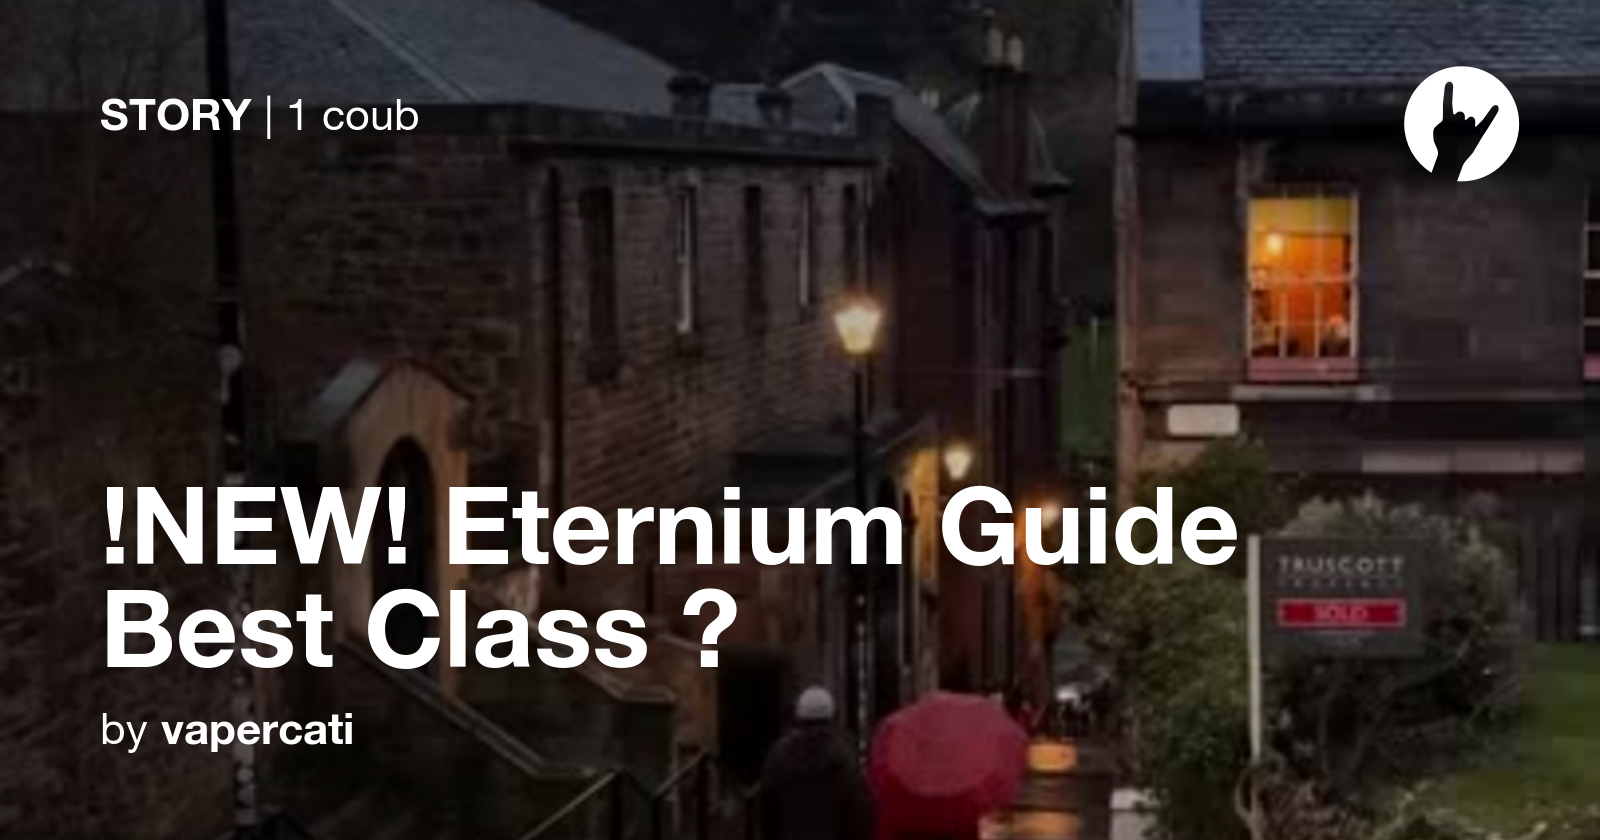 eternium guide reddit